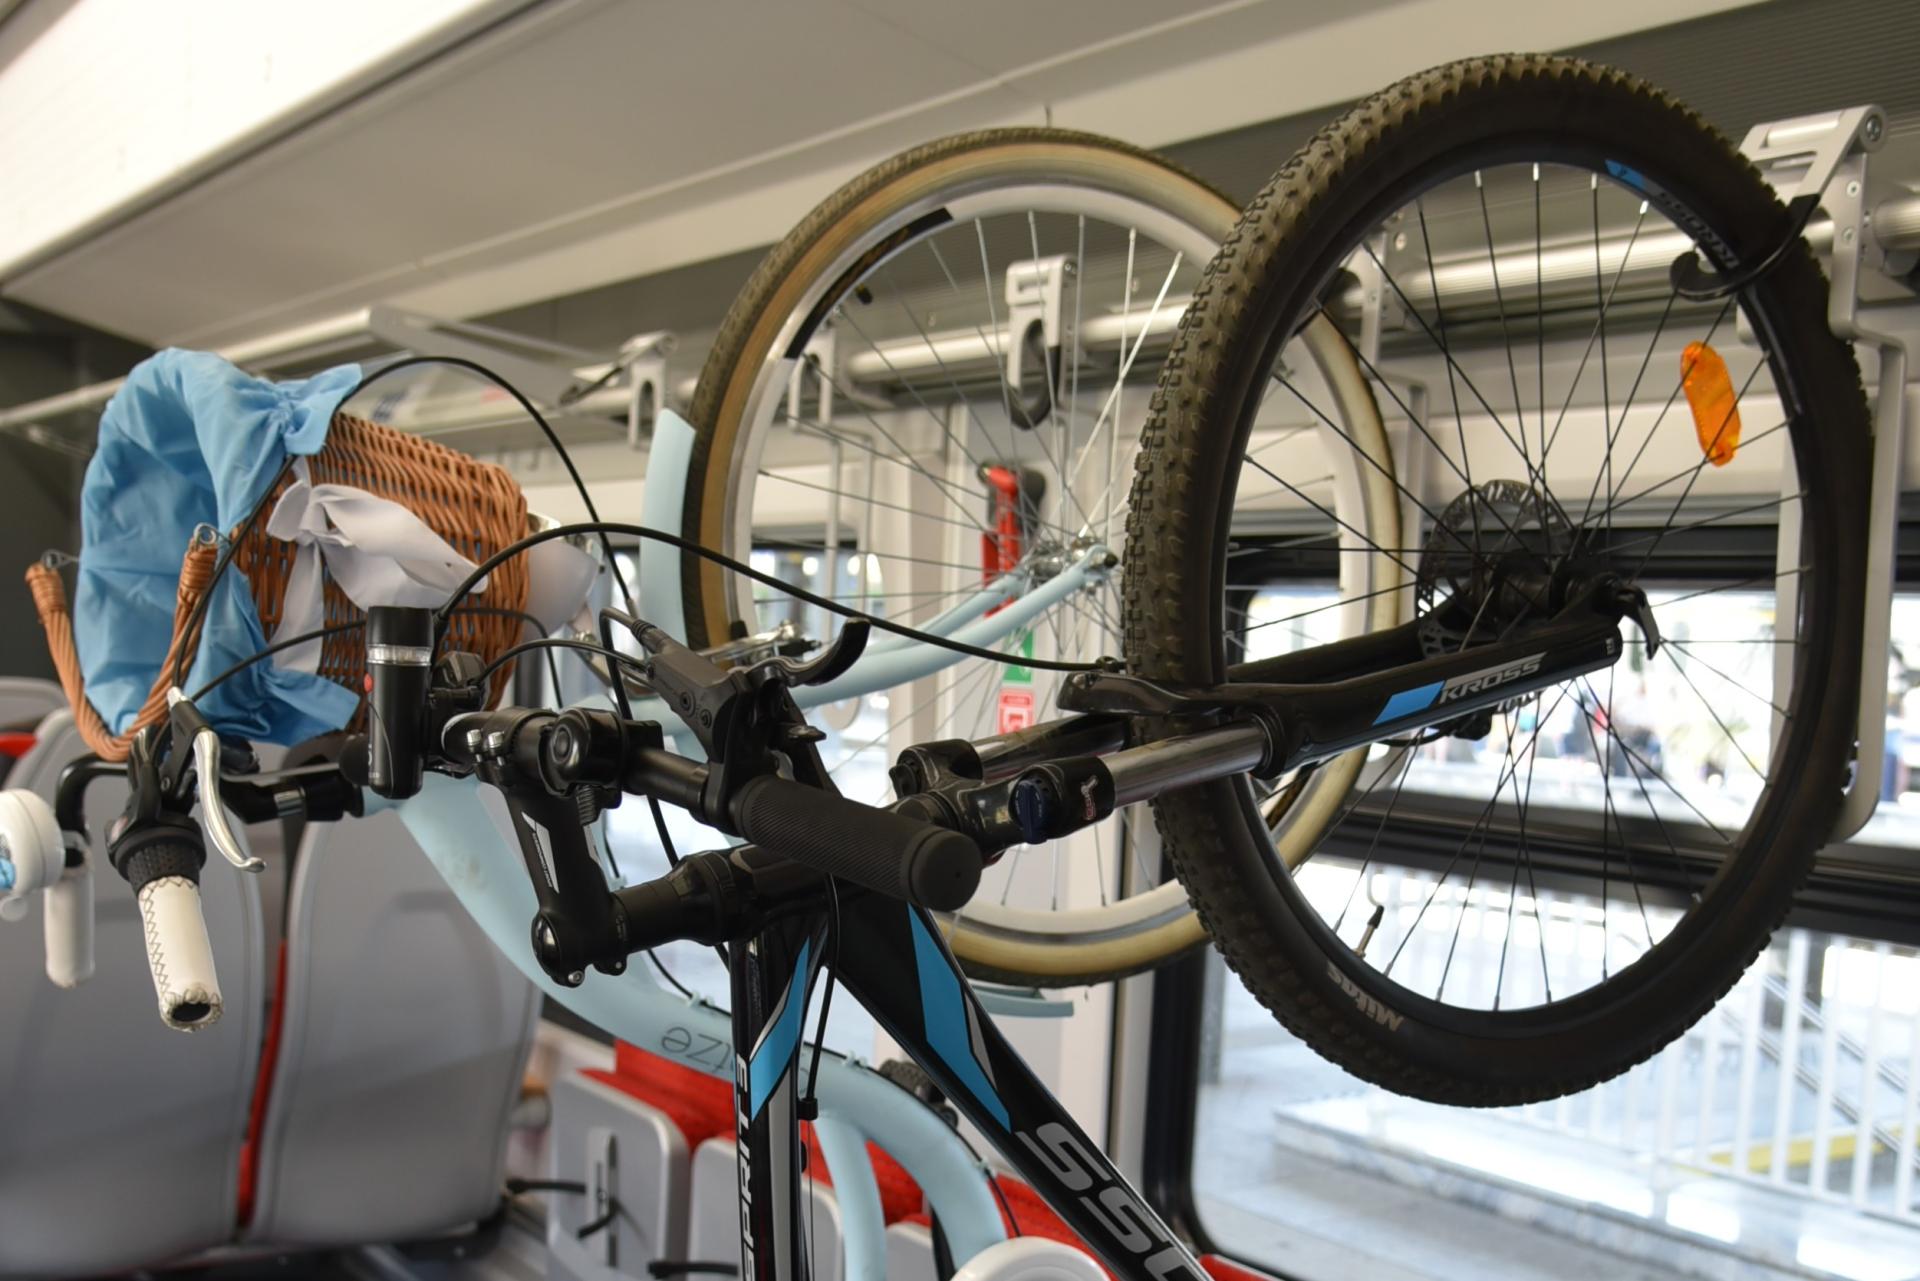 Bezpłatny przewóz rowerów w pociągach regionalnych (3-5 czerwca) - zobacz więcej